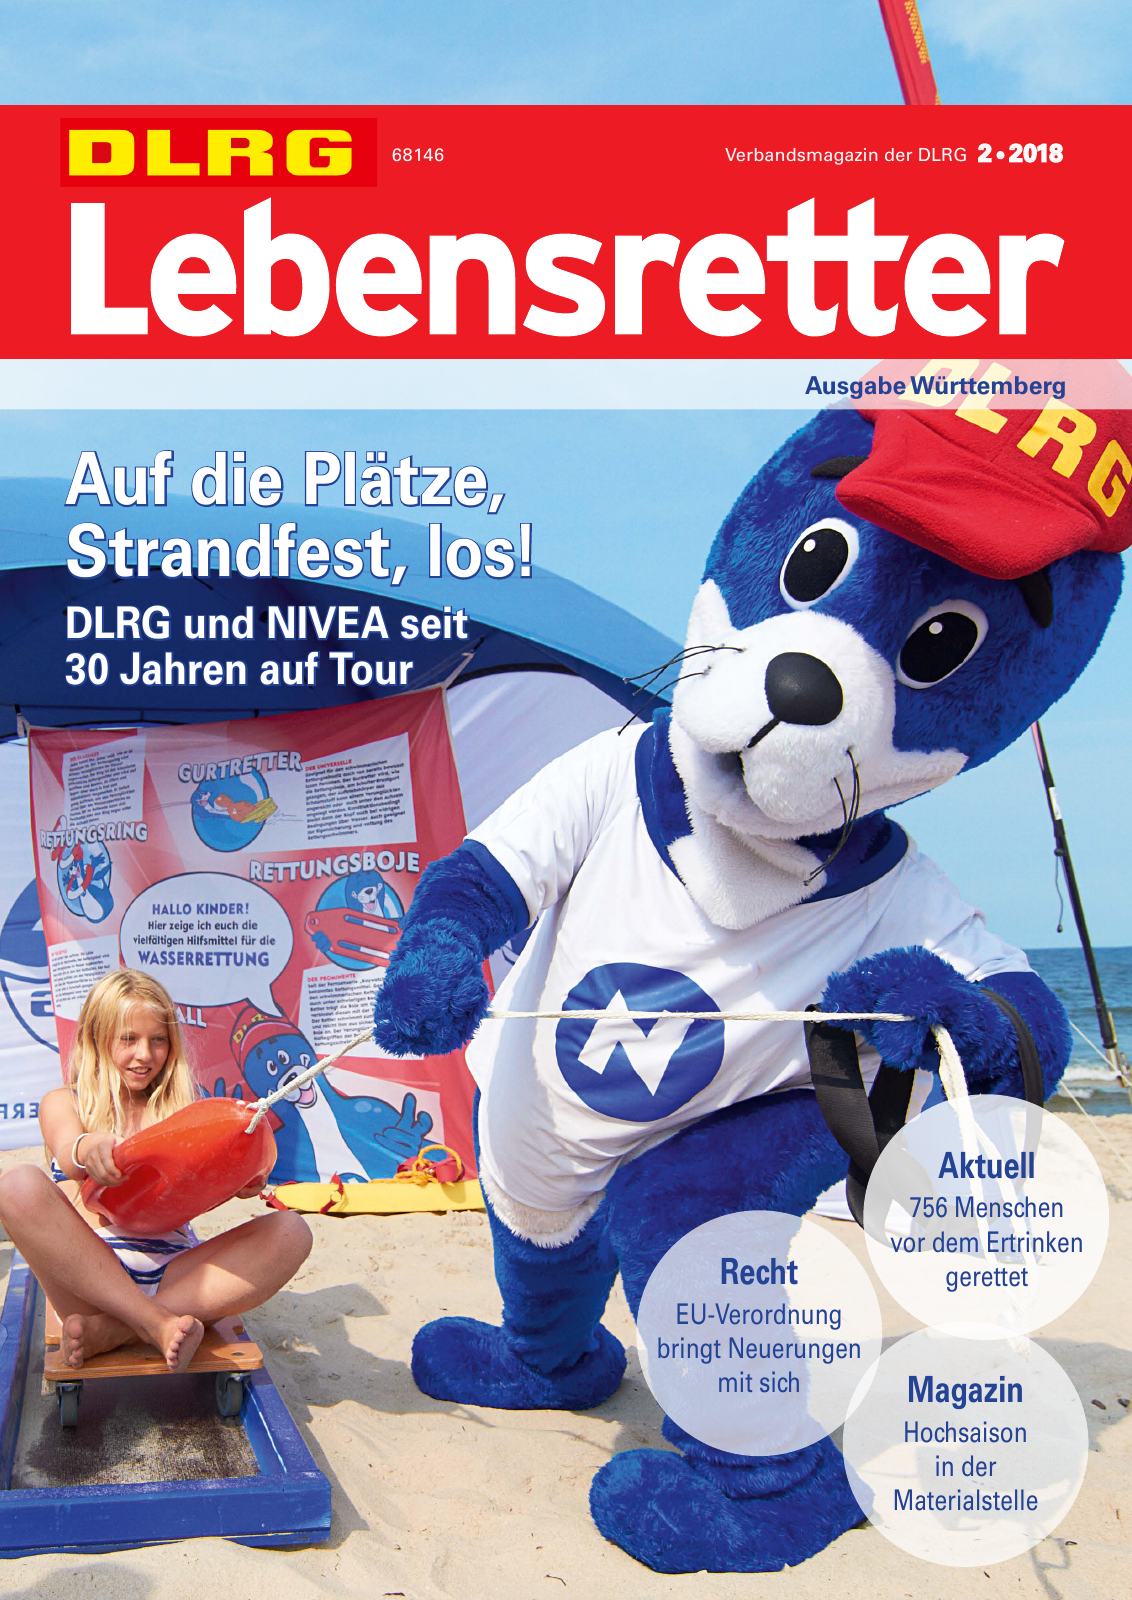 Vorschau Lebensretter 2/2018 - Regionalausgabe Württemberg Seite 1